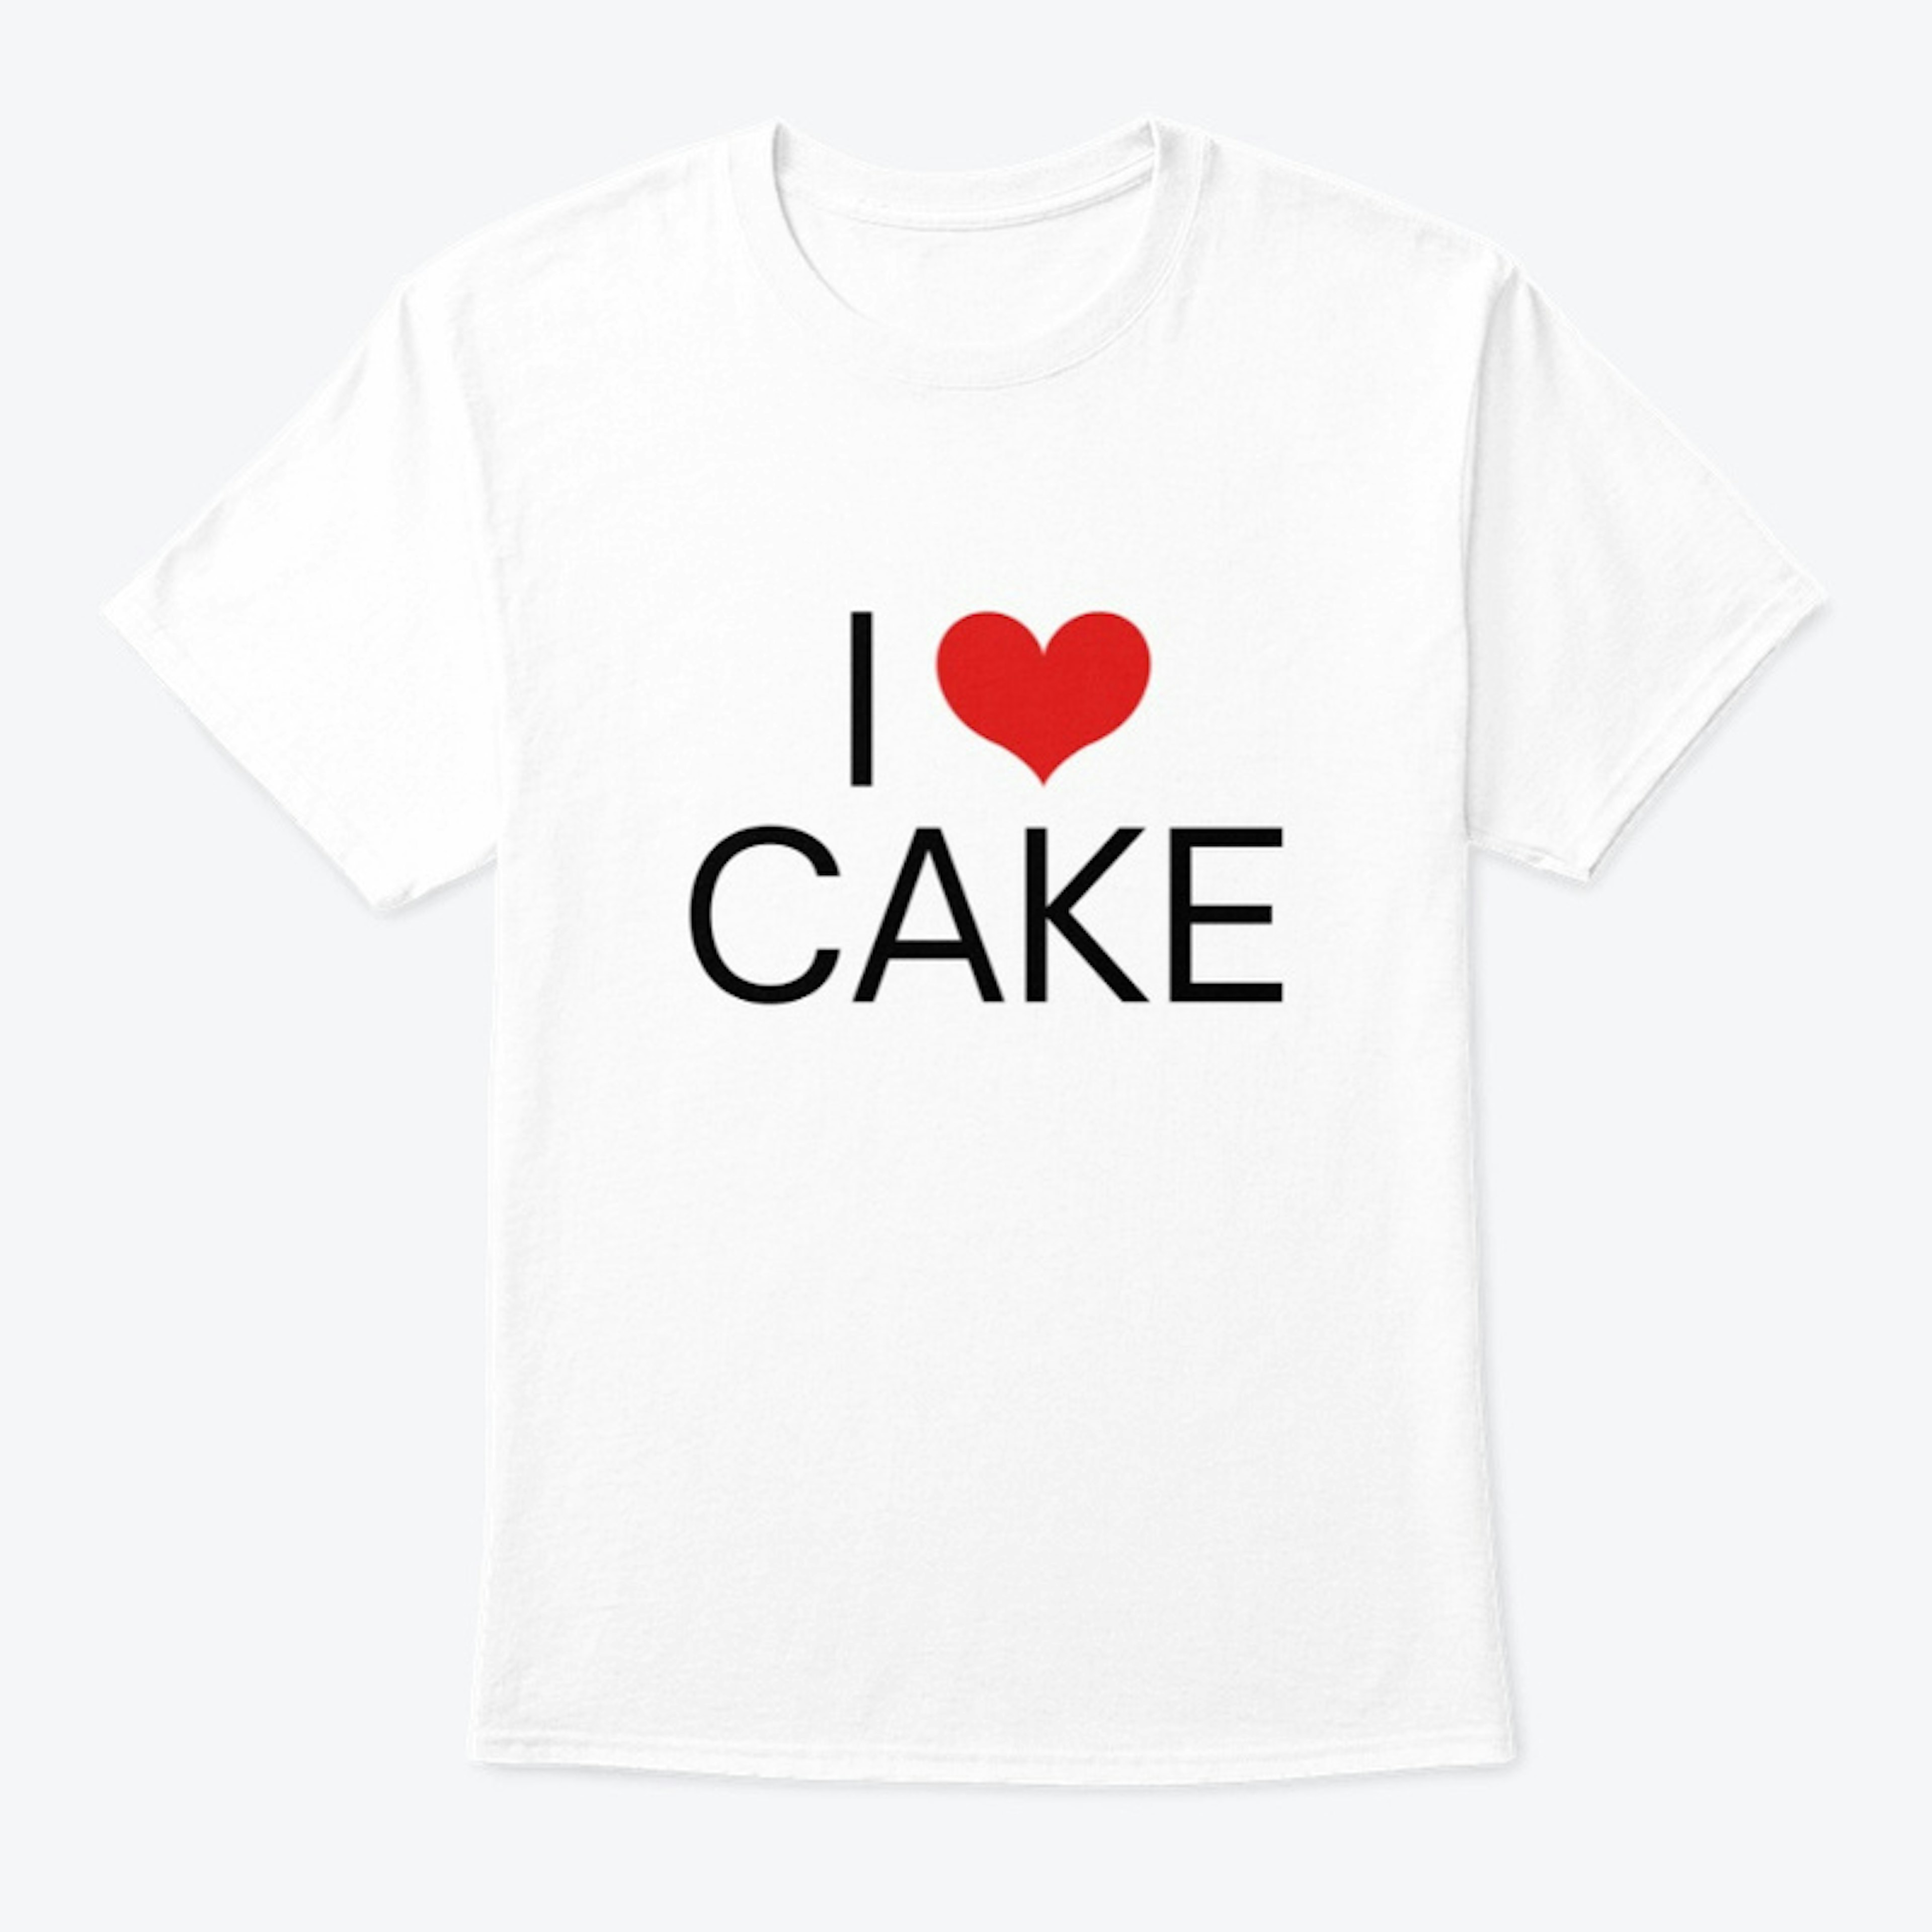 Legacy Cakery - I LOVE CAKE (White Tee)